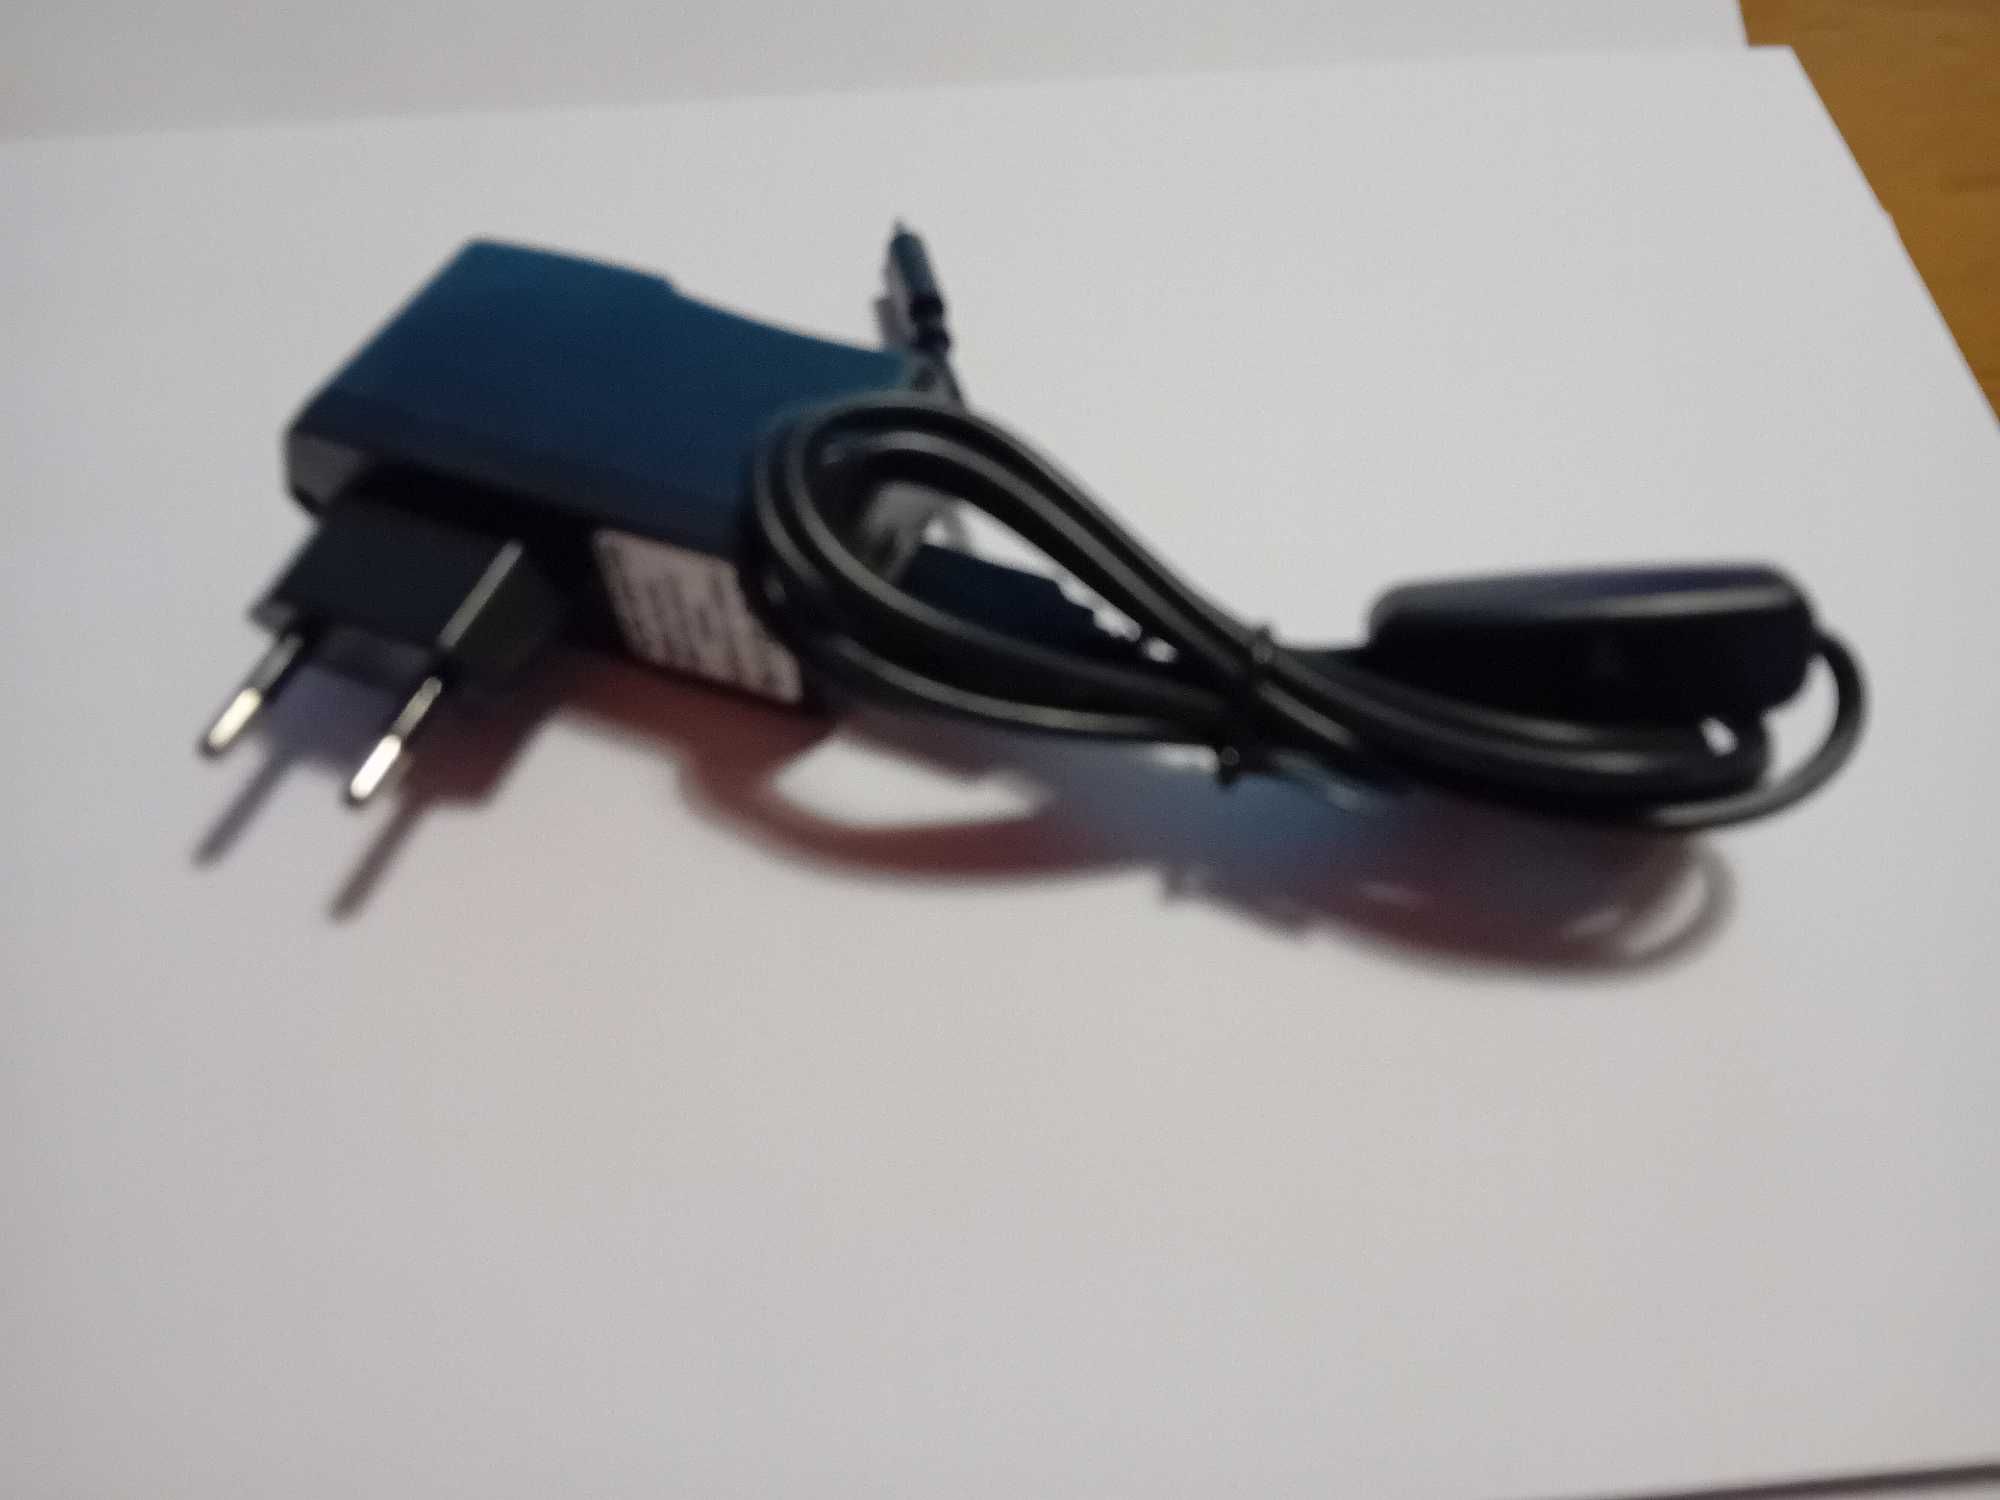 Raspberry Pi 3 Model B + caixa + carregador + cabo hdmi